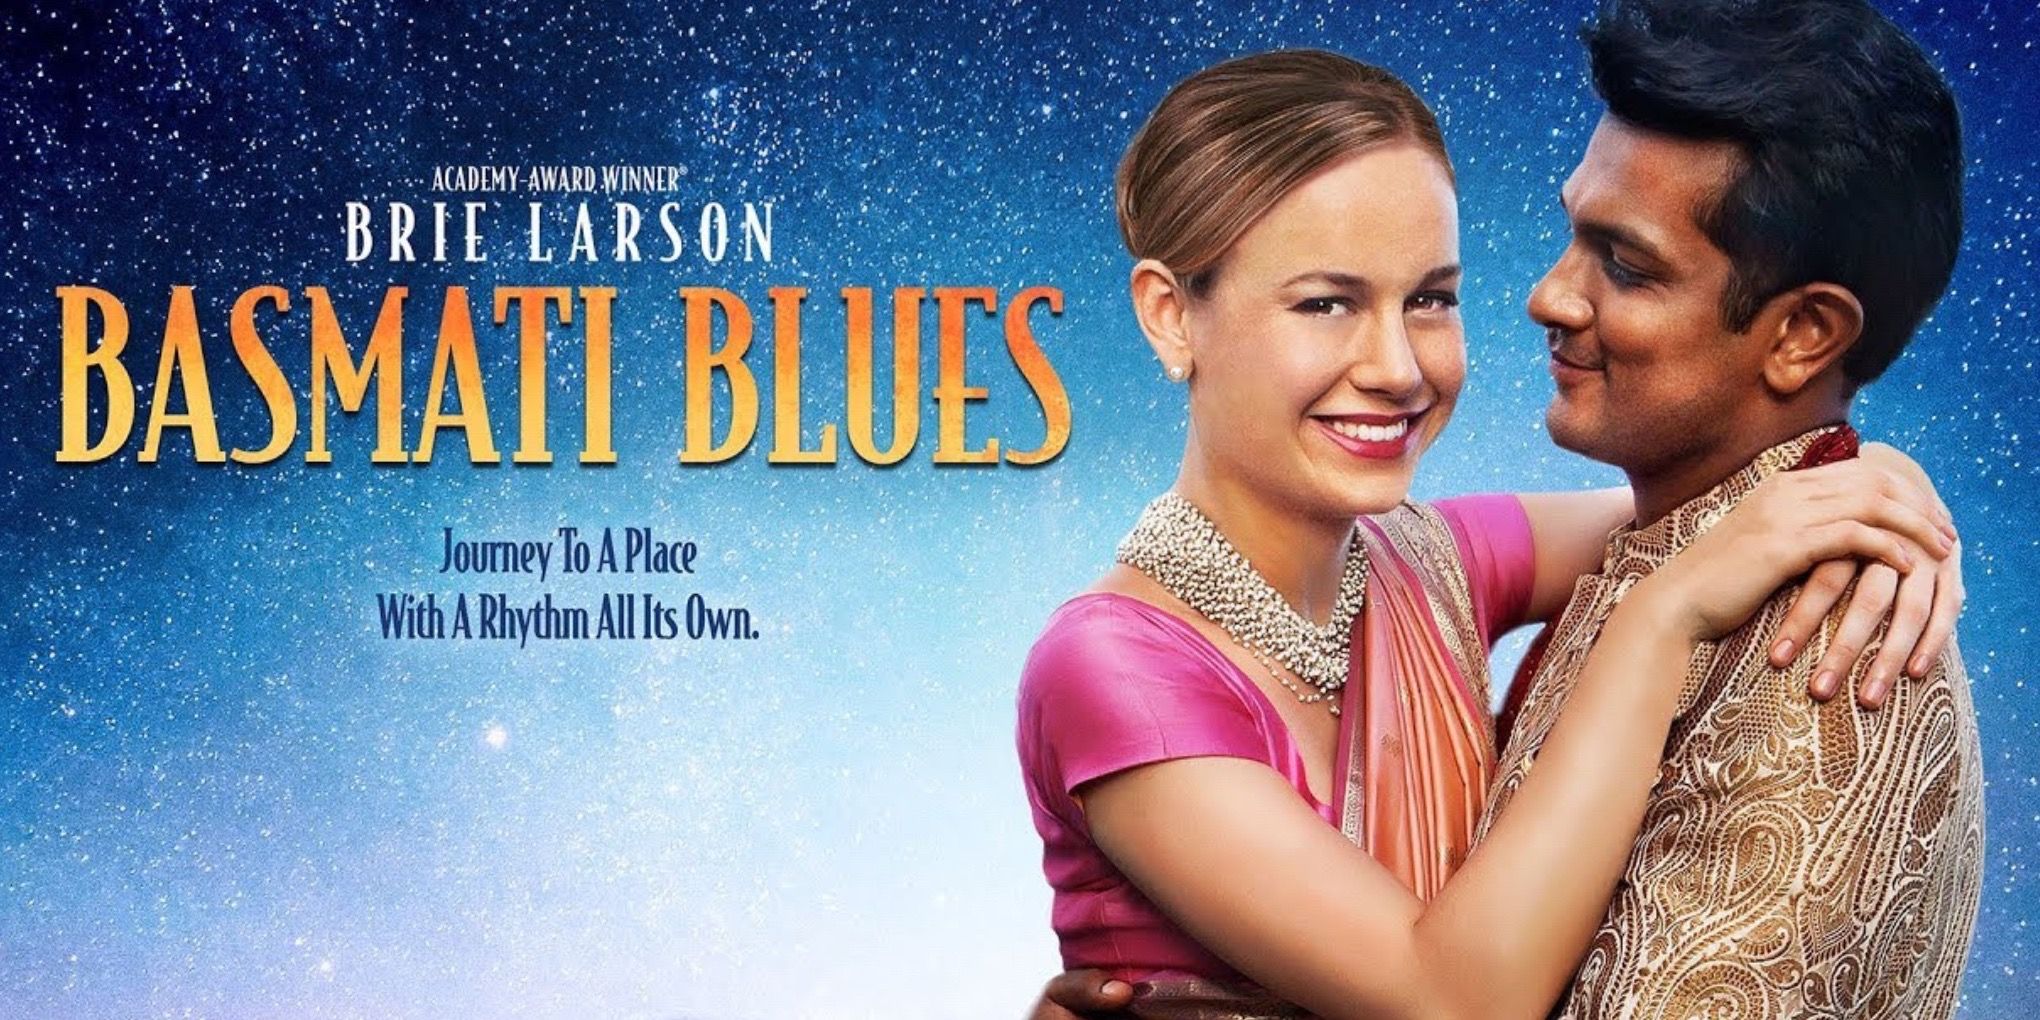 Brie Larson and Utkarsh Ambudkar in Basmati Blues